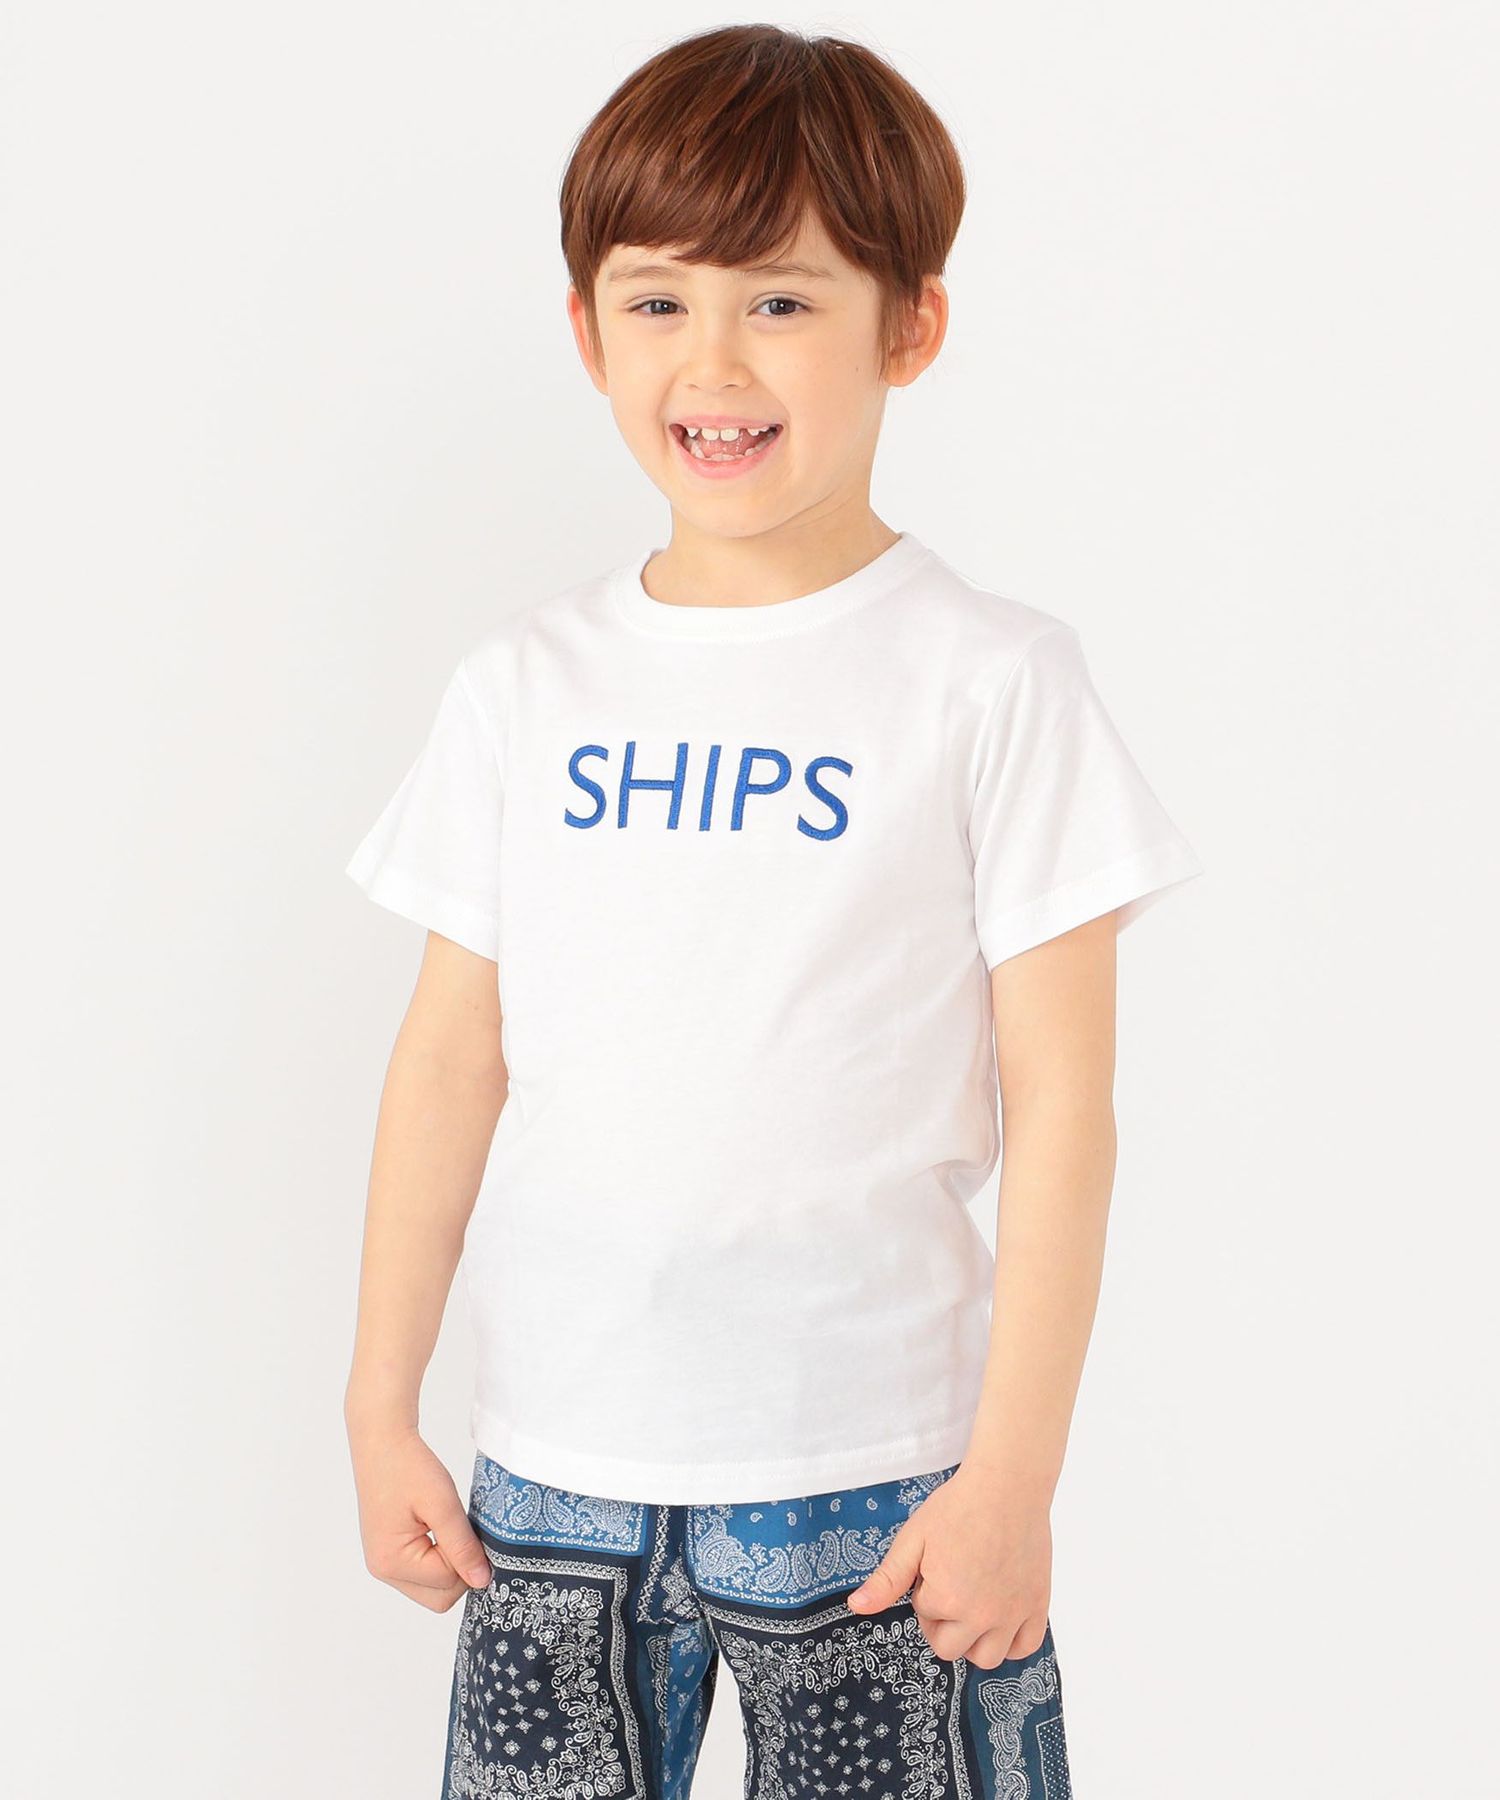 SHIPSSHIPS 誕生日/お祝い KIDS: ファミリーおそろい SHIPS 直輸入品激安 ロゴ 100〜160cm TEE